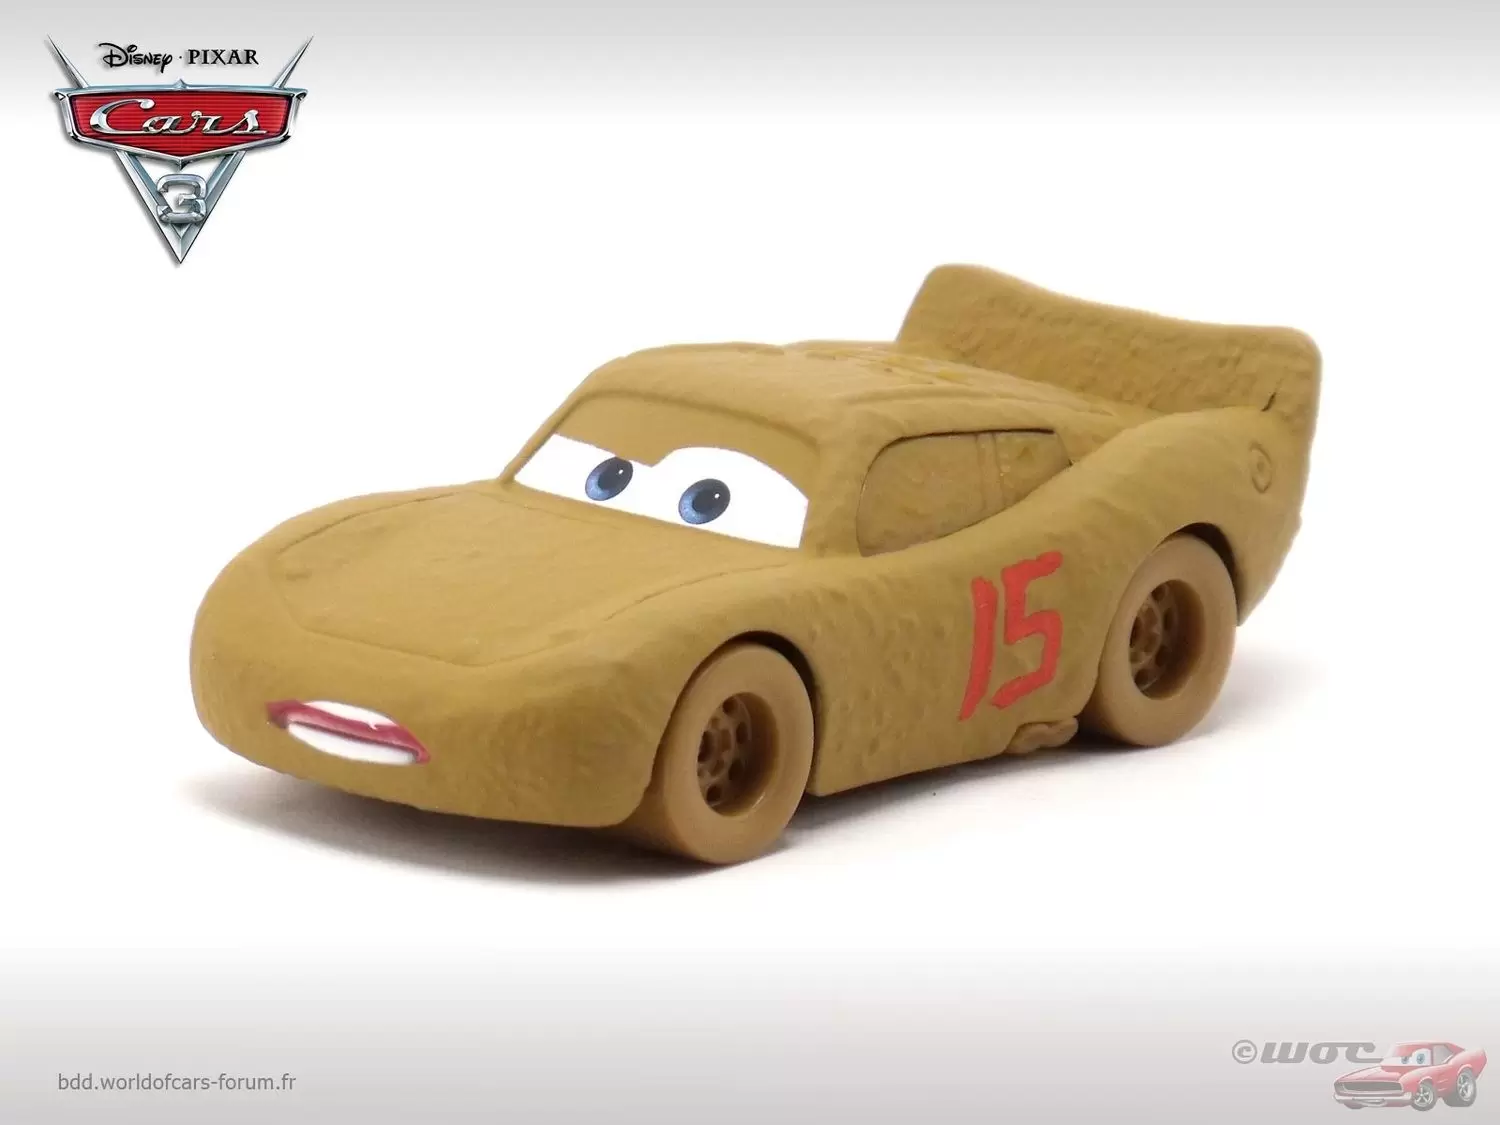 Cars 3 models - Lightning McQueen as Chester Whipplefilter & Circuit Thunder Hollow